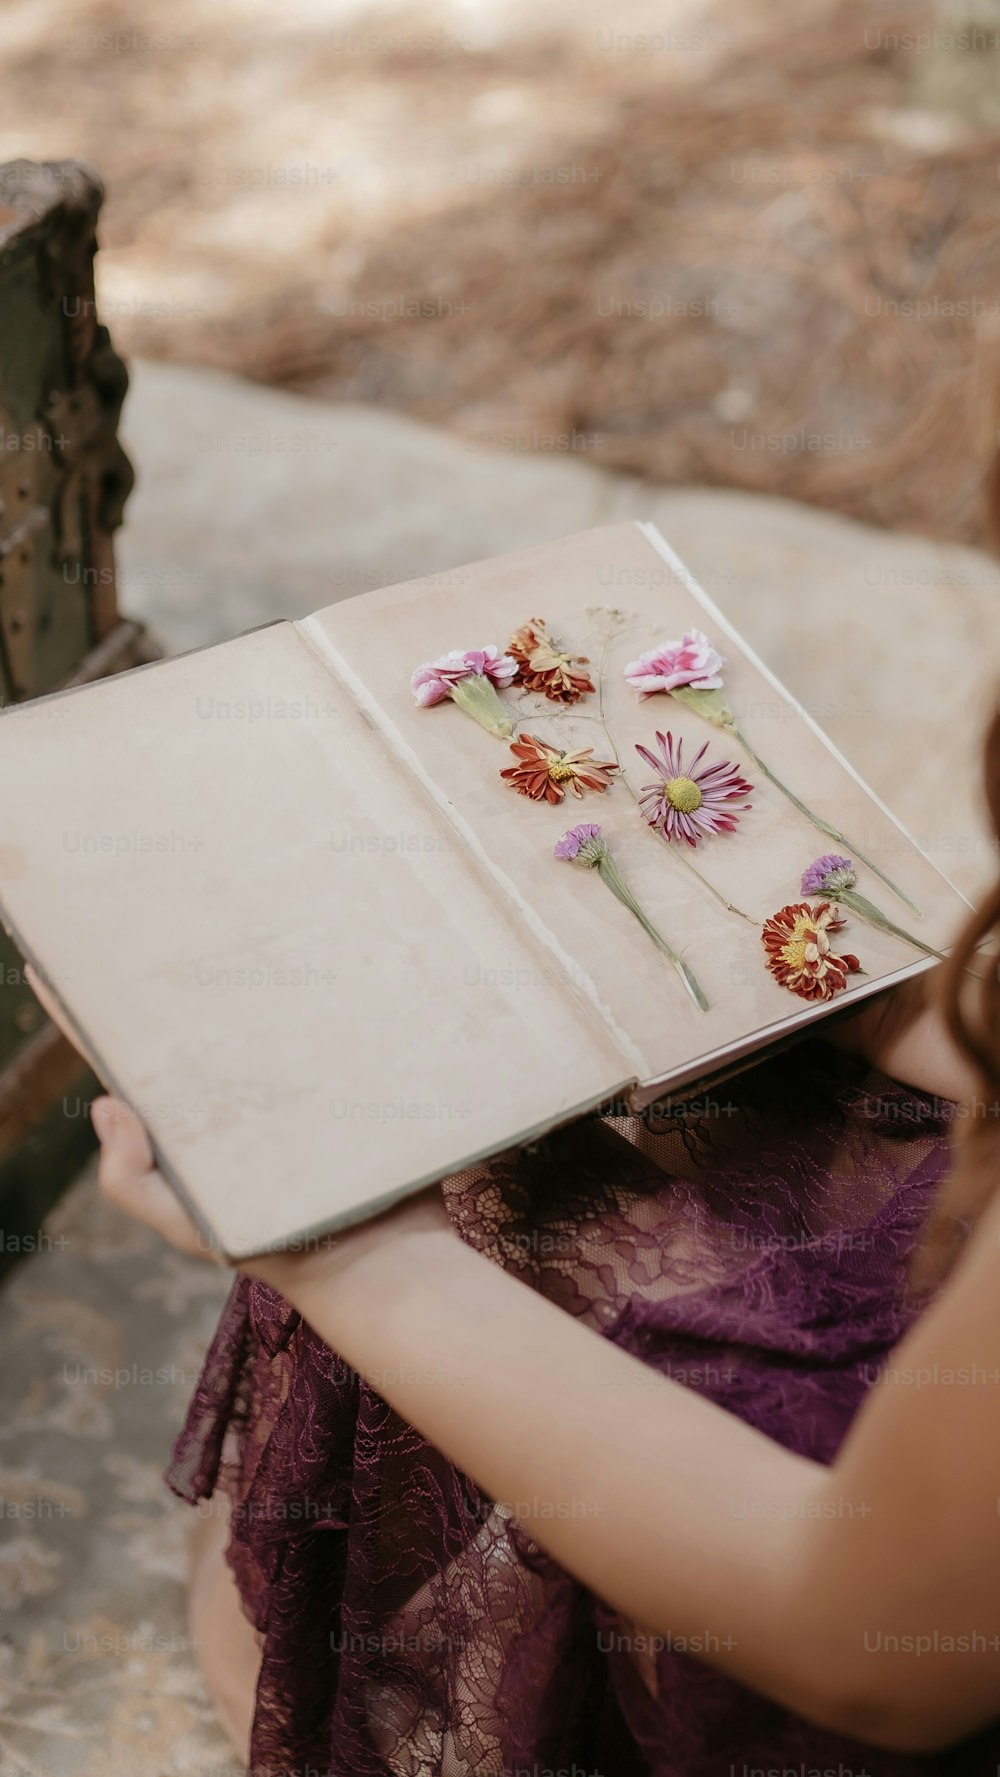 꽃이 달린 책을 들고 있는 여자